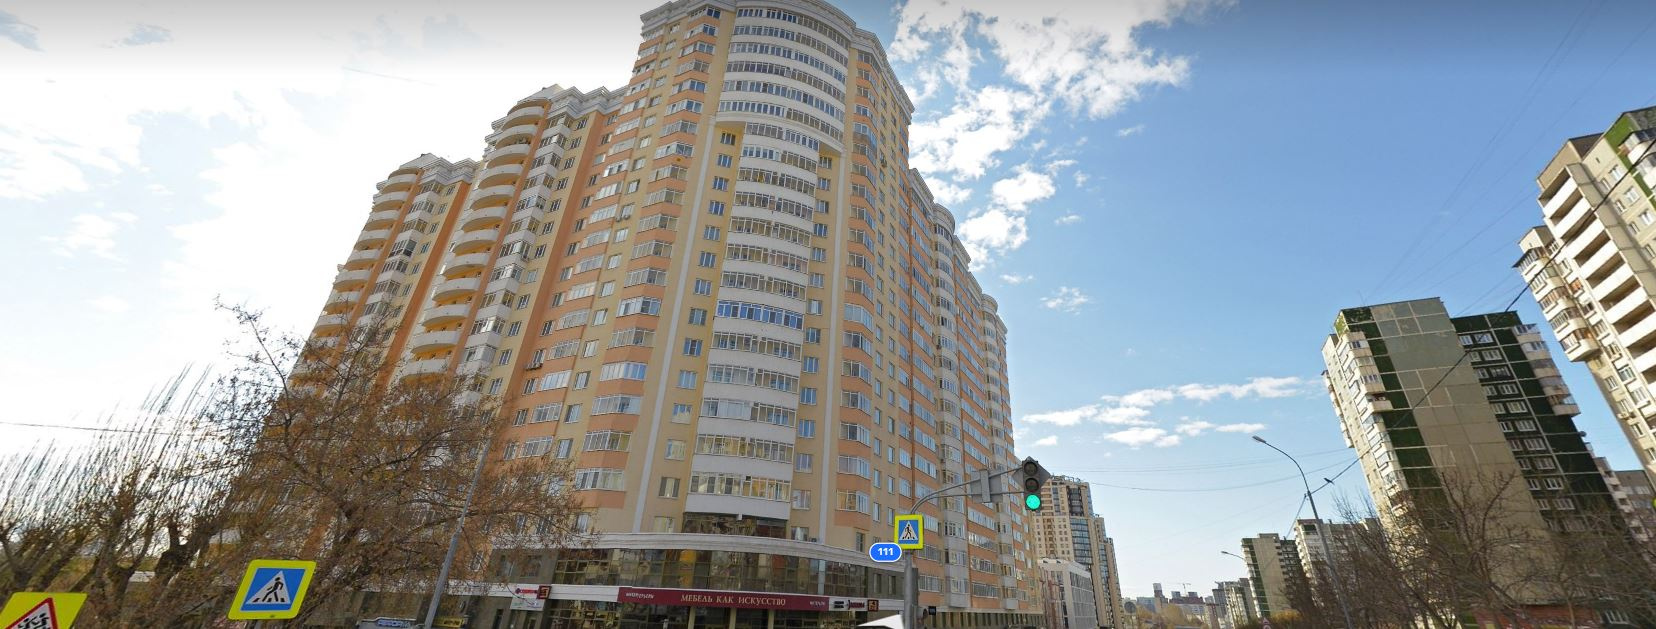 Коммунальщики из элитного дома в центре Екатеринбурга ответили на претензии из-за фекального потопа и тараканов